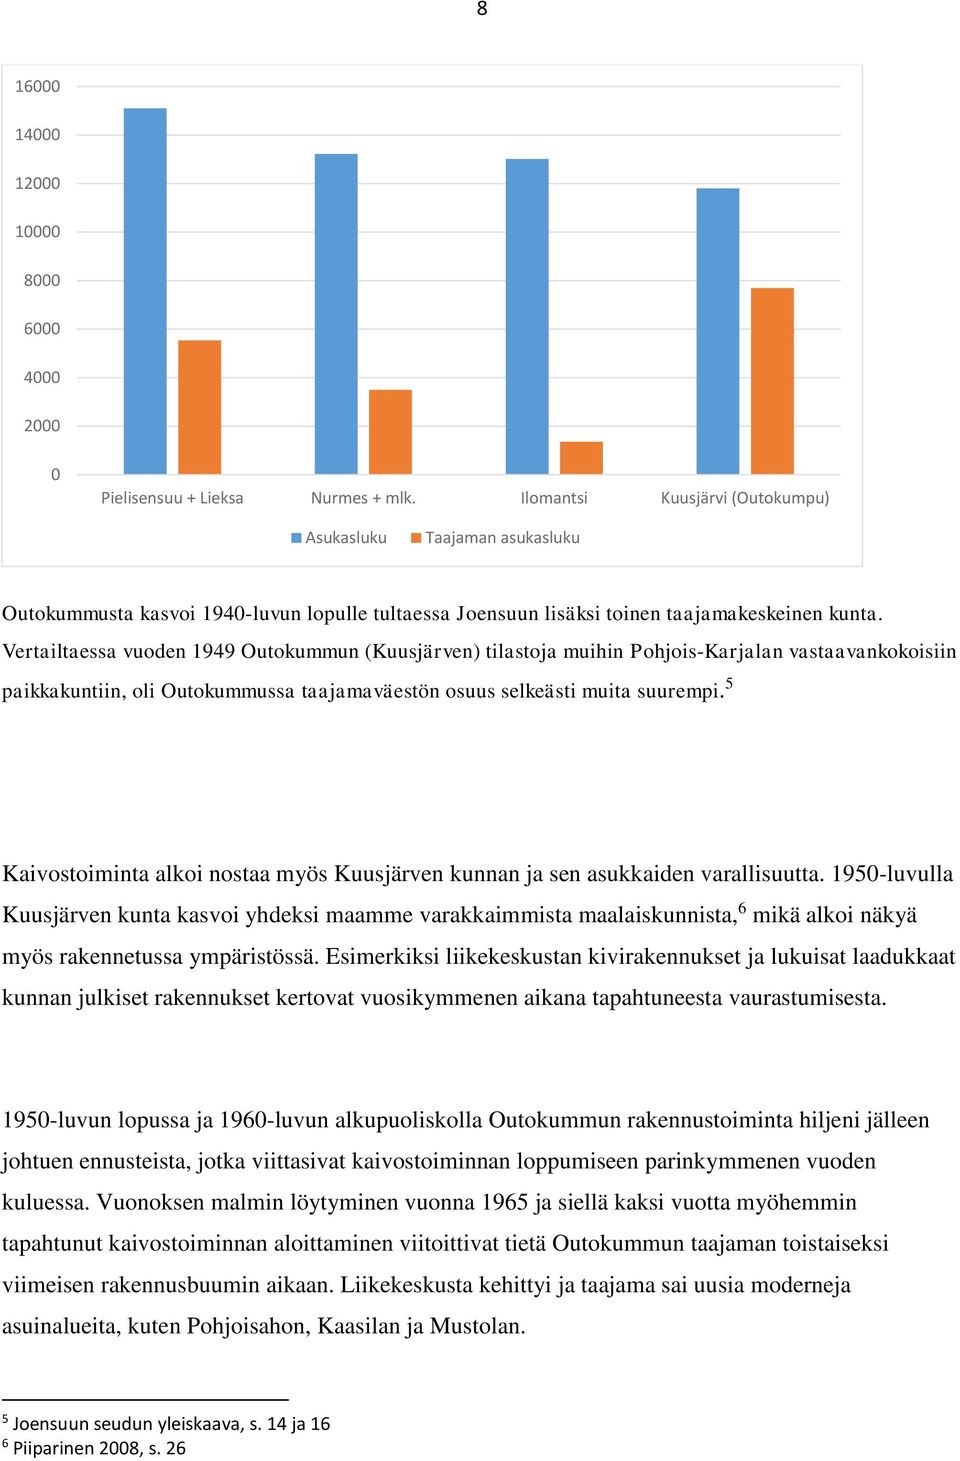 Vertailtaessa vuoden 1949 Outokummun (Kuusjärven) tilastoja muihin Pohjois-Karjalan vastaavankokoisiin paikkakuntiin, oli Outokummussa taajamaväestön osuus selkeästi muita suurempi.